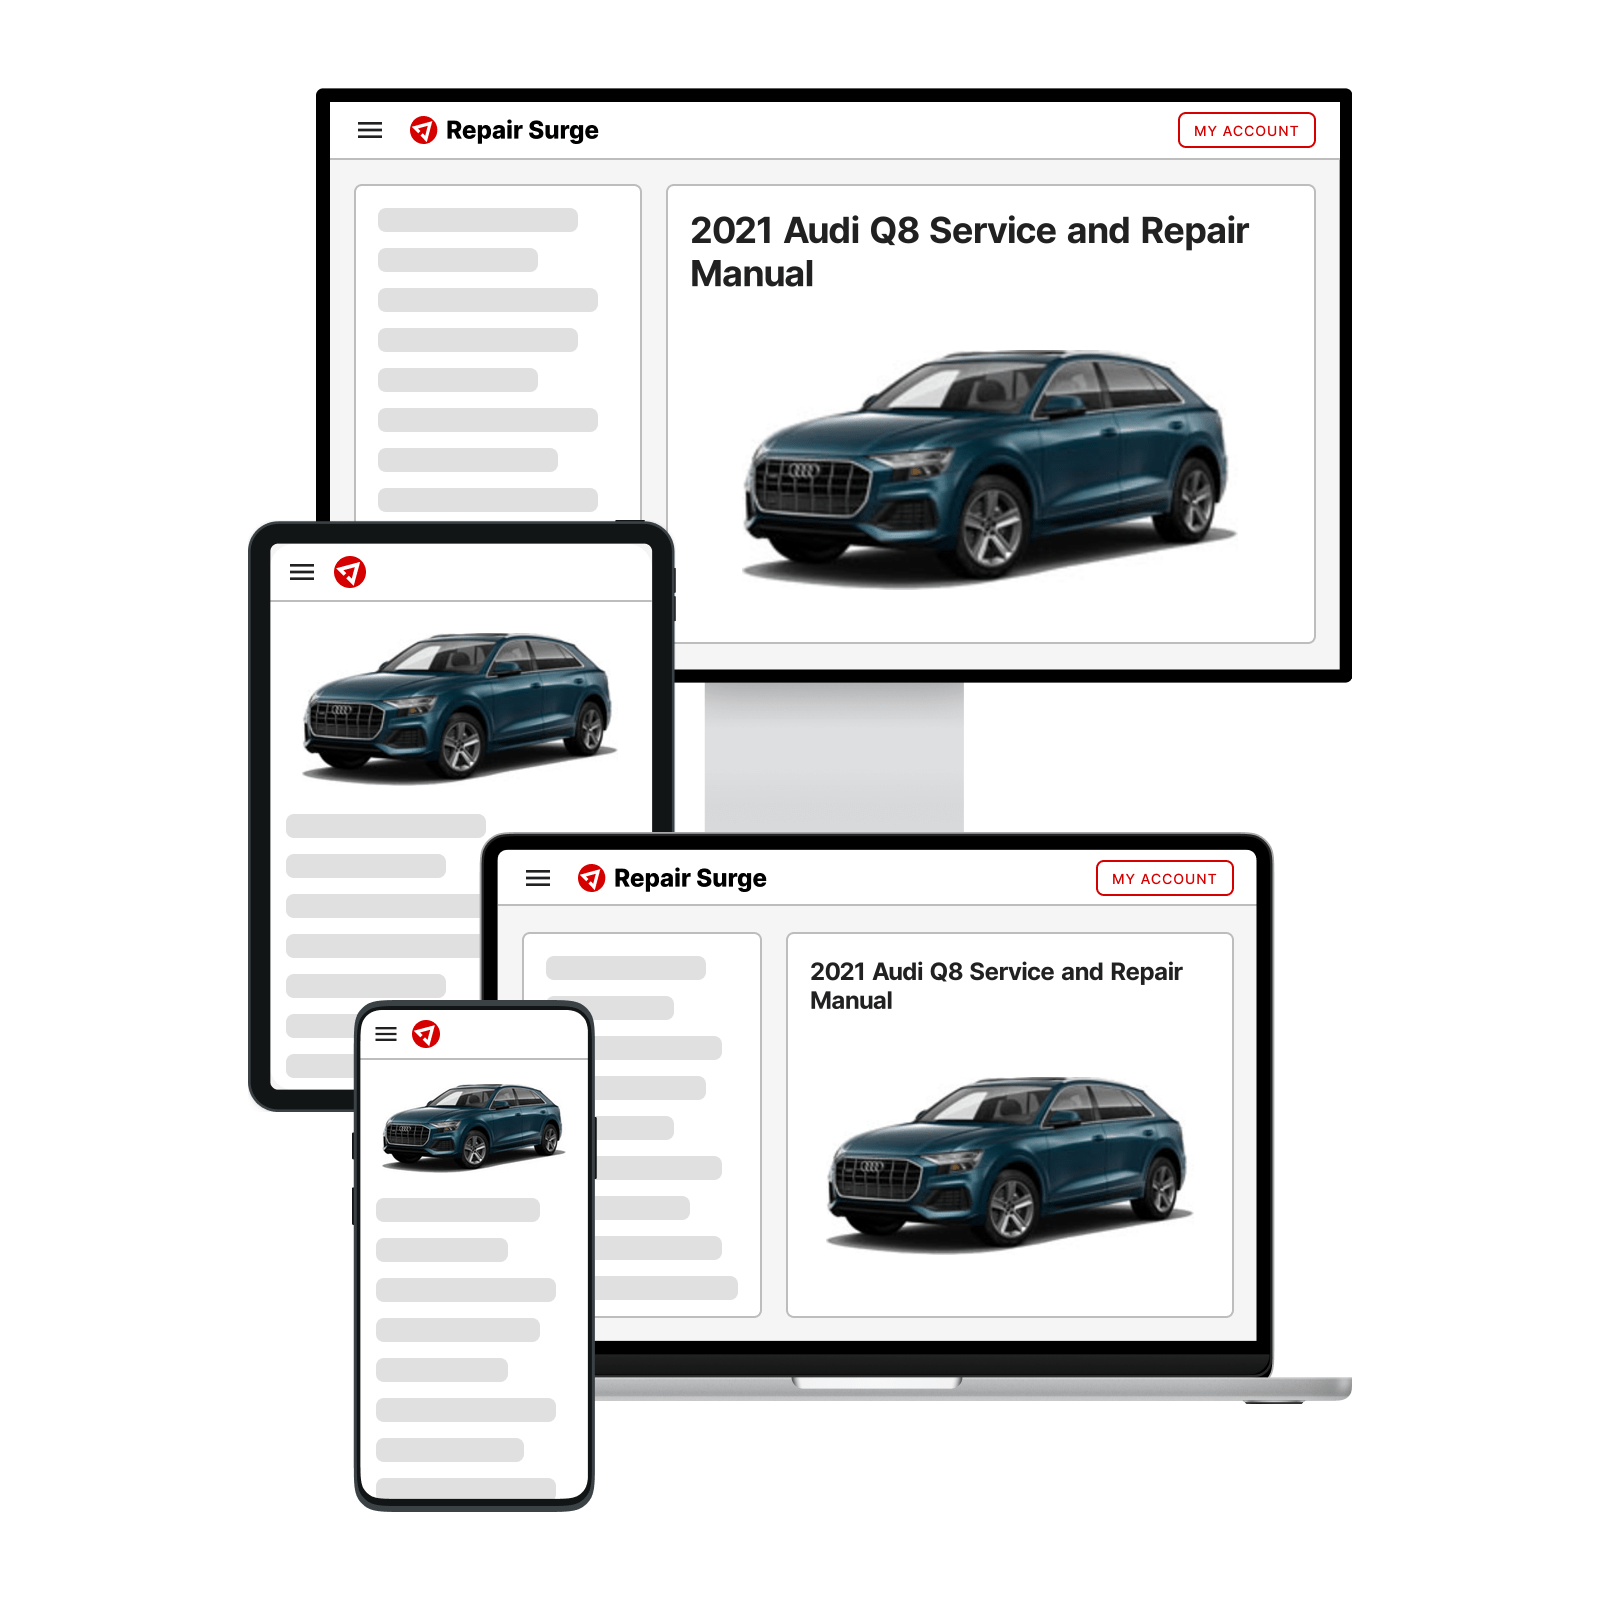 2021 Audi Q8 service and repair manual hero image